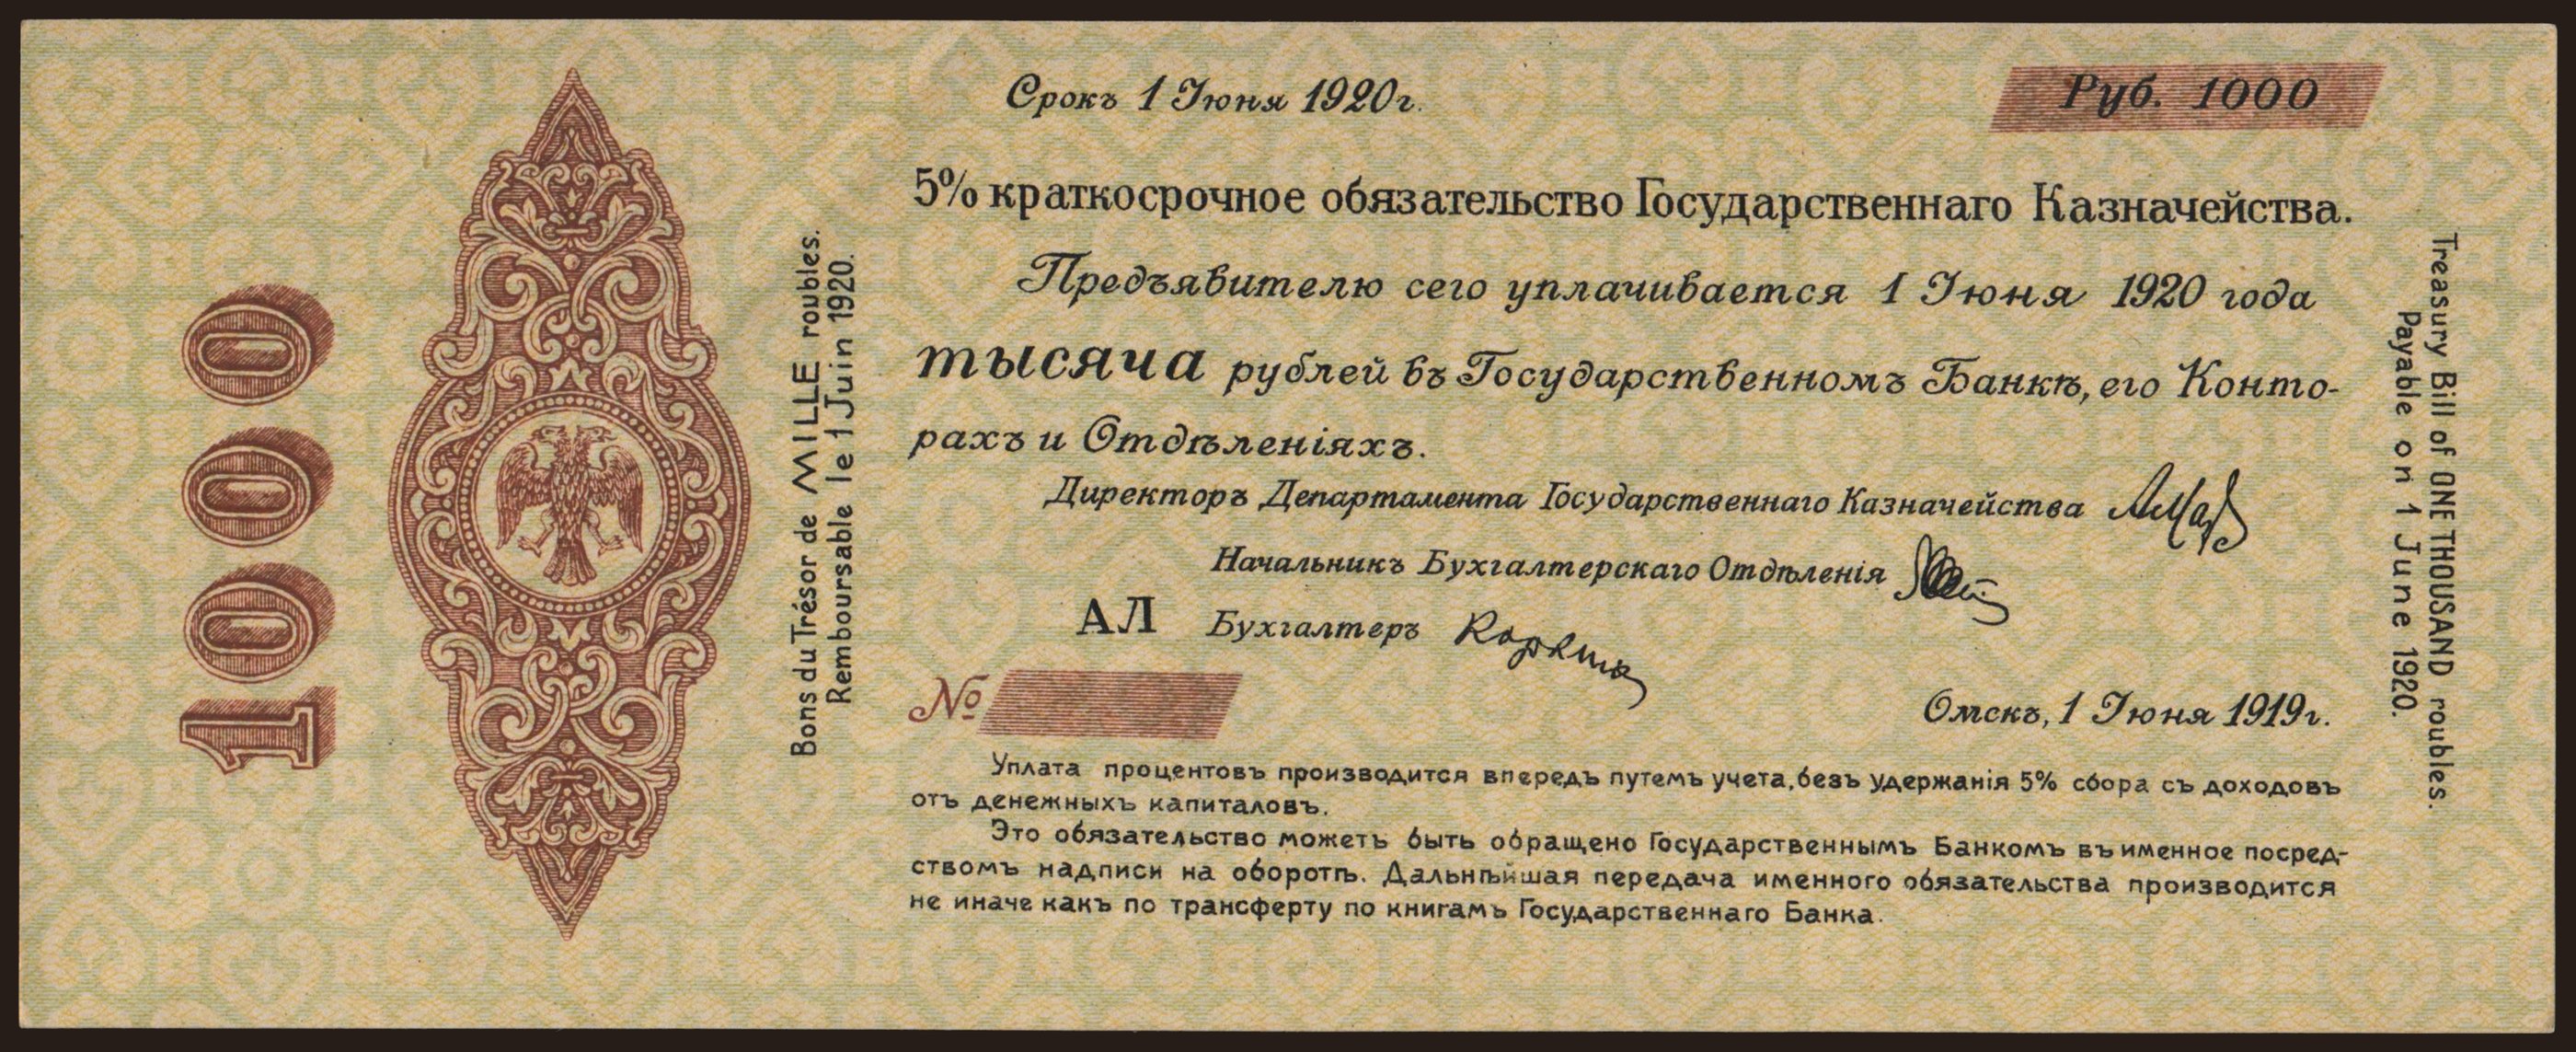 Siberia, 1000 rubel, 1919